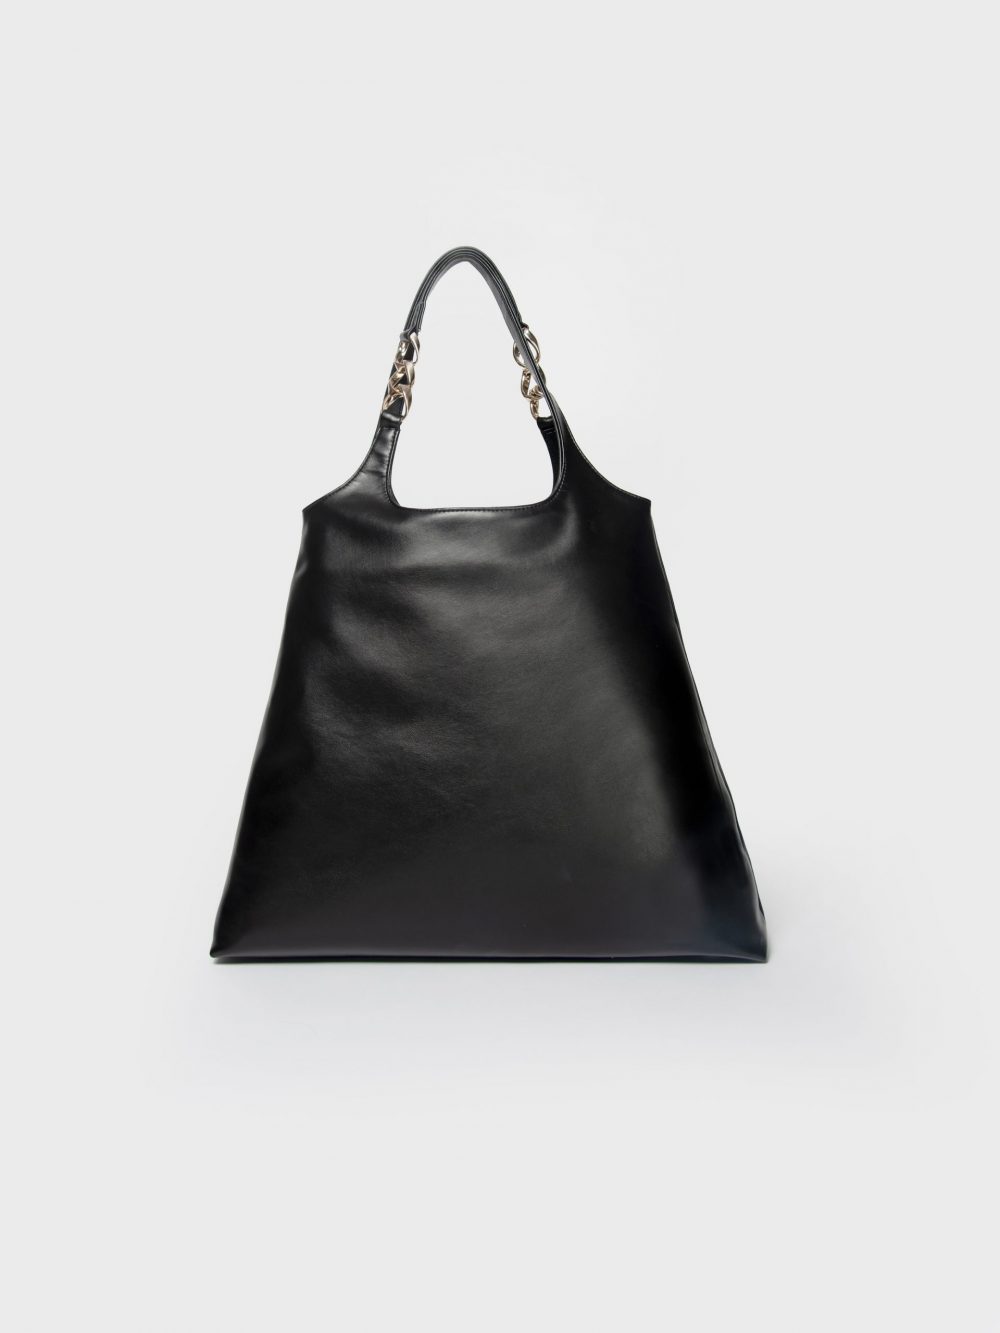 Grand sac à main noir Sébastopol sac cabas idéal en idée de cadeau éthique sac besace femme écoresponsable